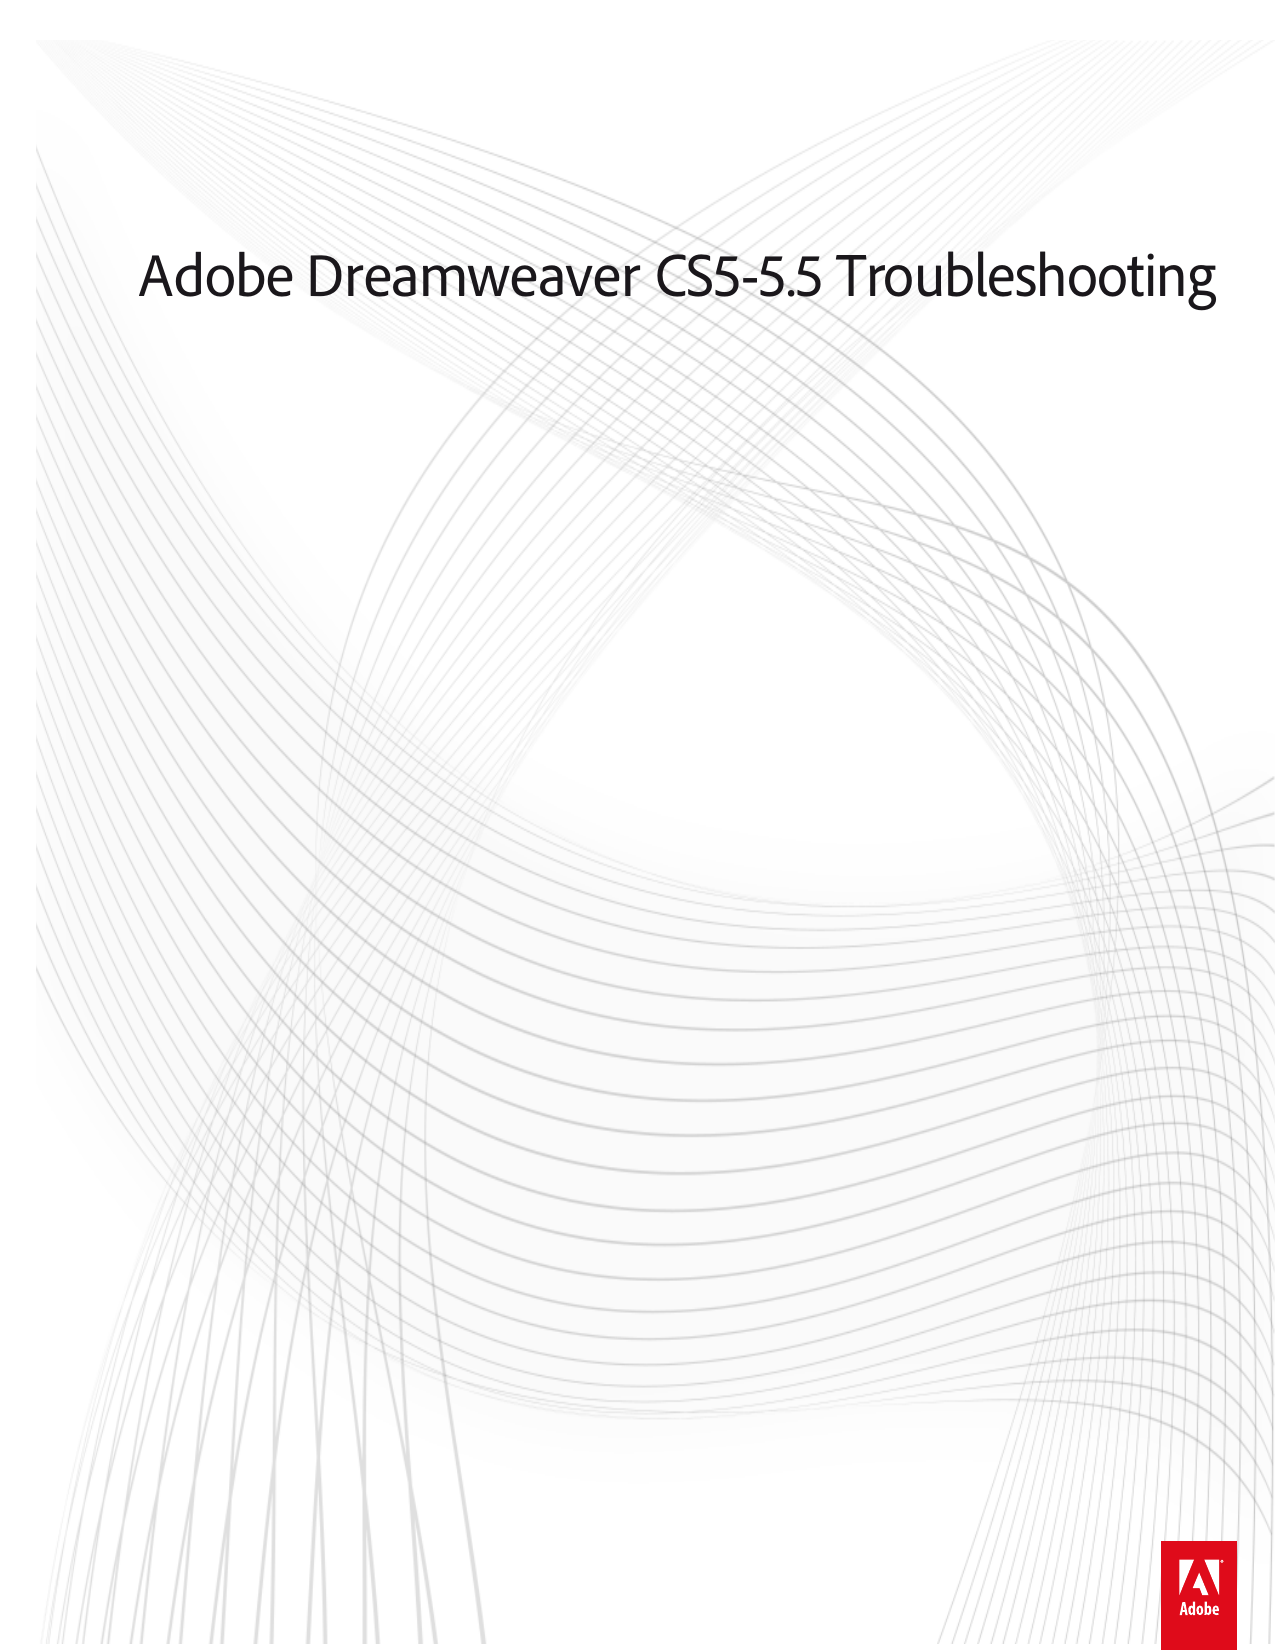 adobe dreamweaver cs5 5 trial download